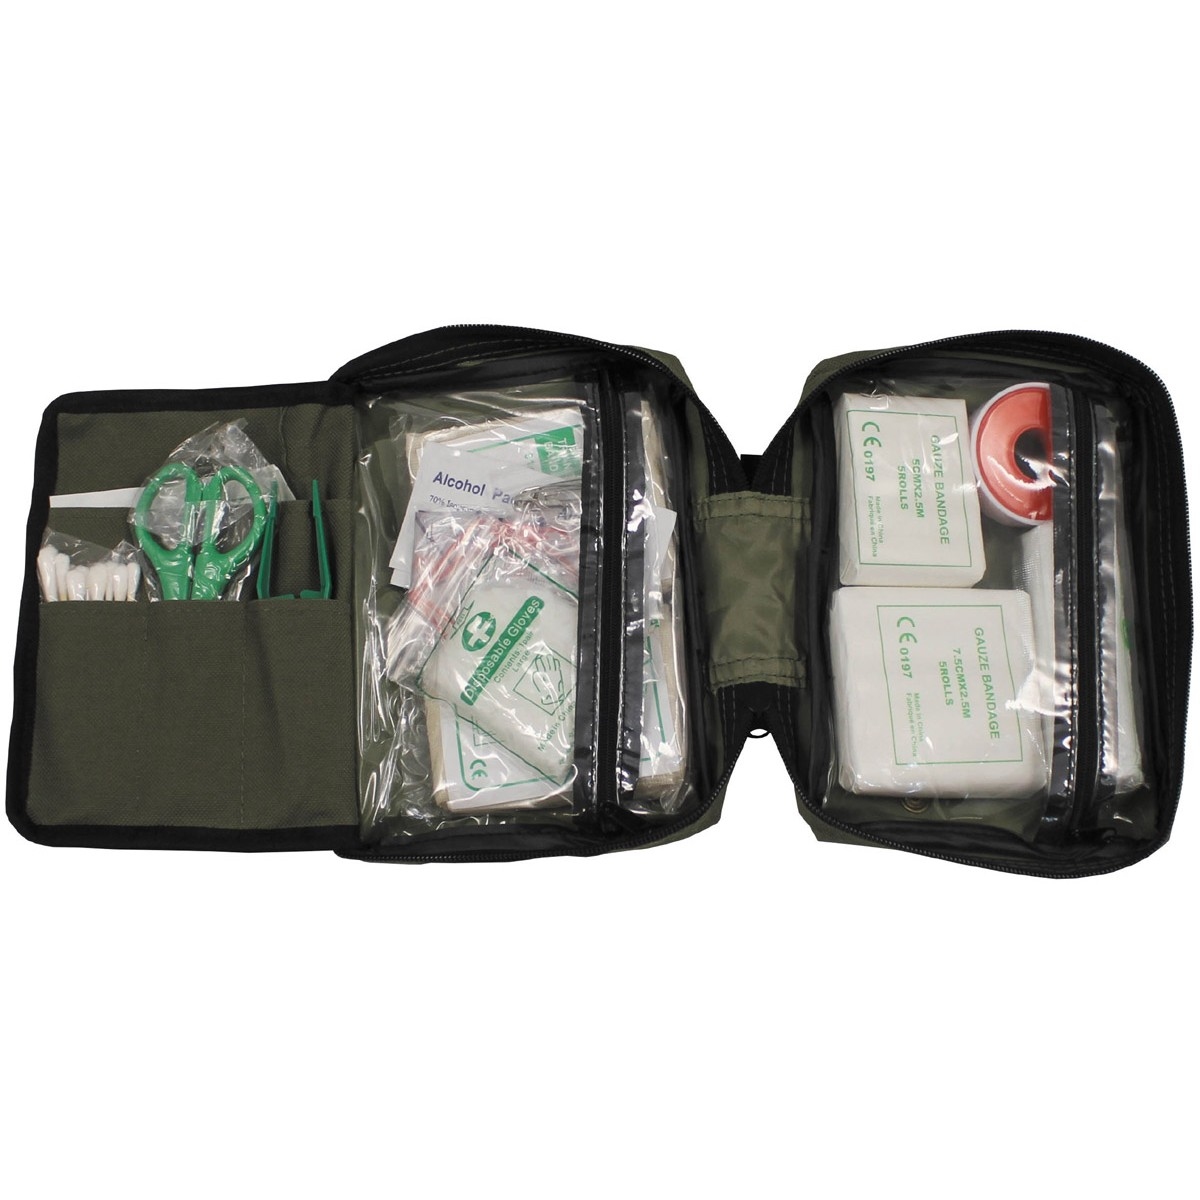 vroegrijp spek Rodeo EHBO reisset First Aid kit backpacker